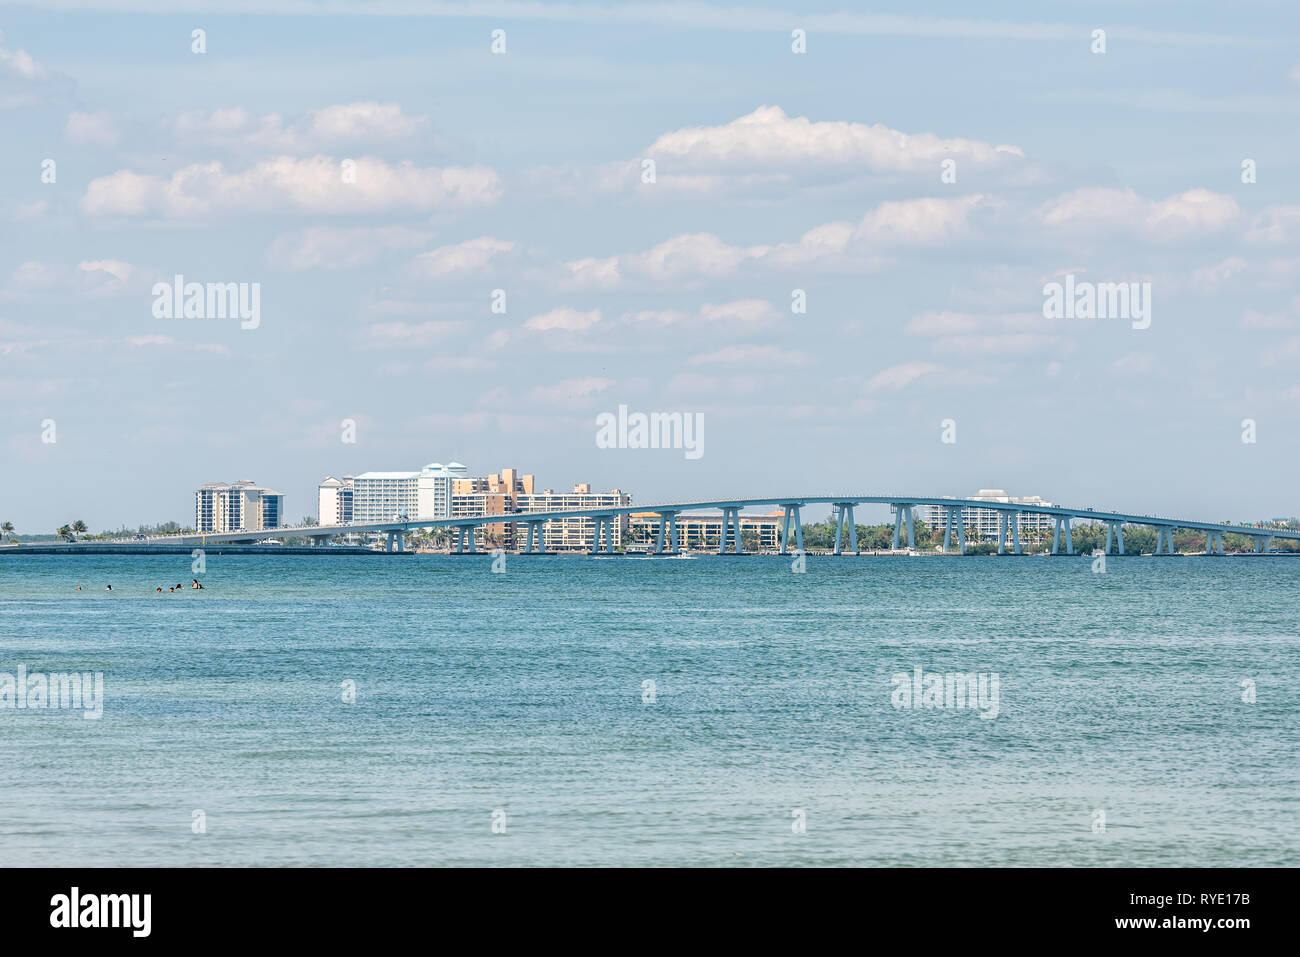 Sanibel Island, USA Bucht während der sonnigen Tag mit Toll Bridge Causeway Bridge Autobahn Straße und Autos im Verkehr urlaub Urlaub in Florida peo Stockfoto